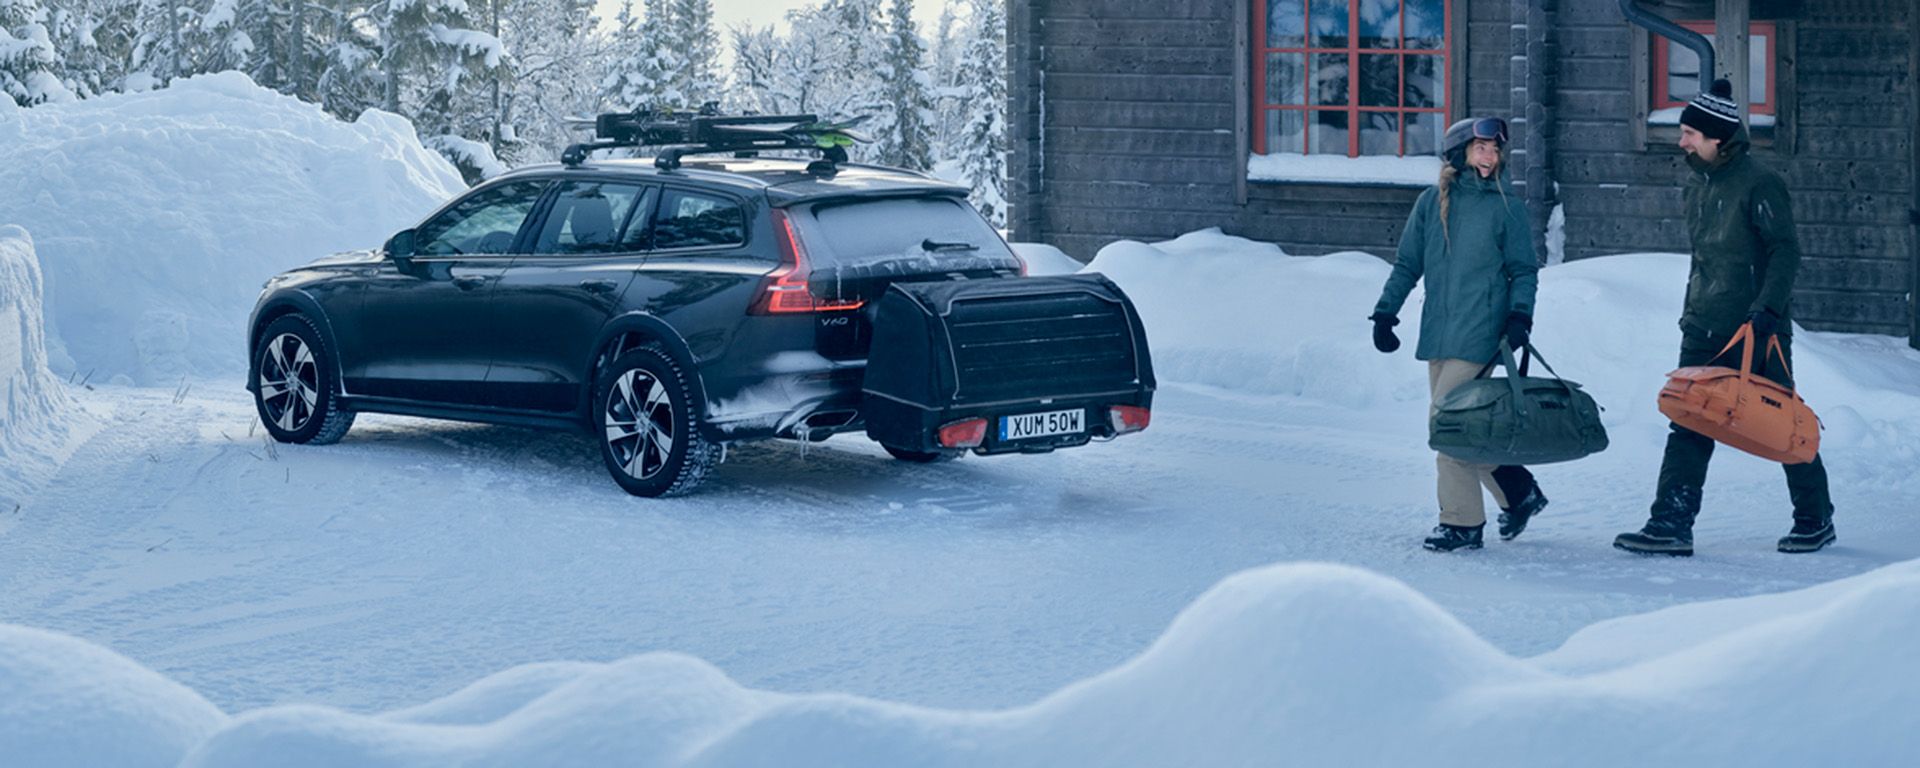 Automobil sa stražnjim nosačem tereta Thule Onto i nosačem za skije stoji parkiran u snijegu pokraj brvnare.